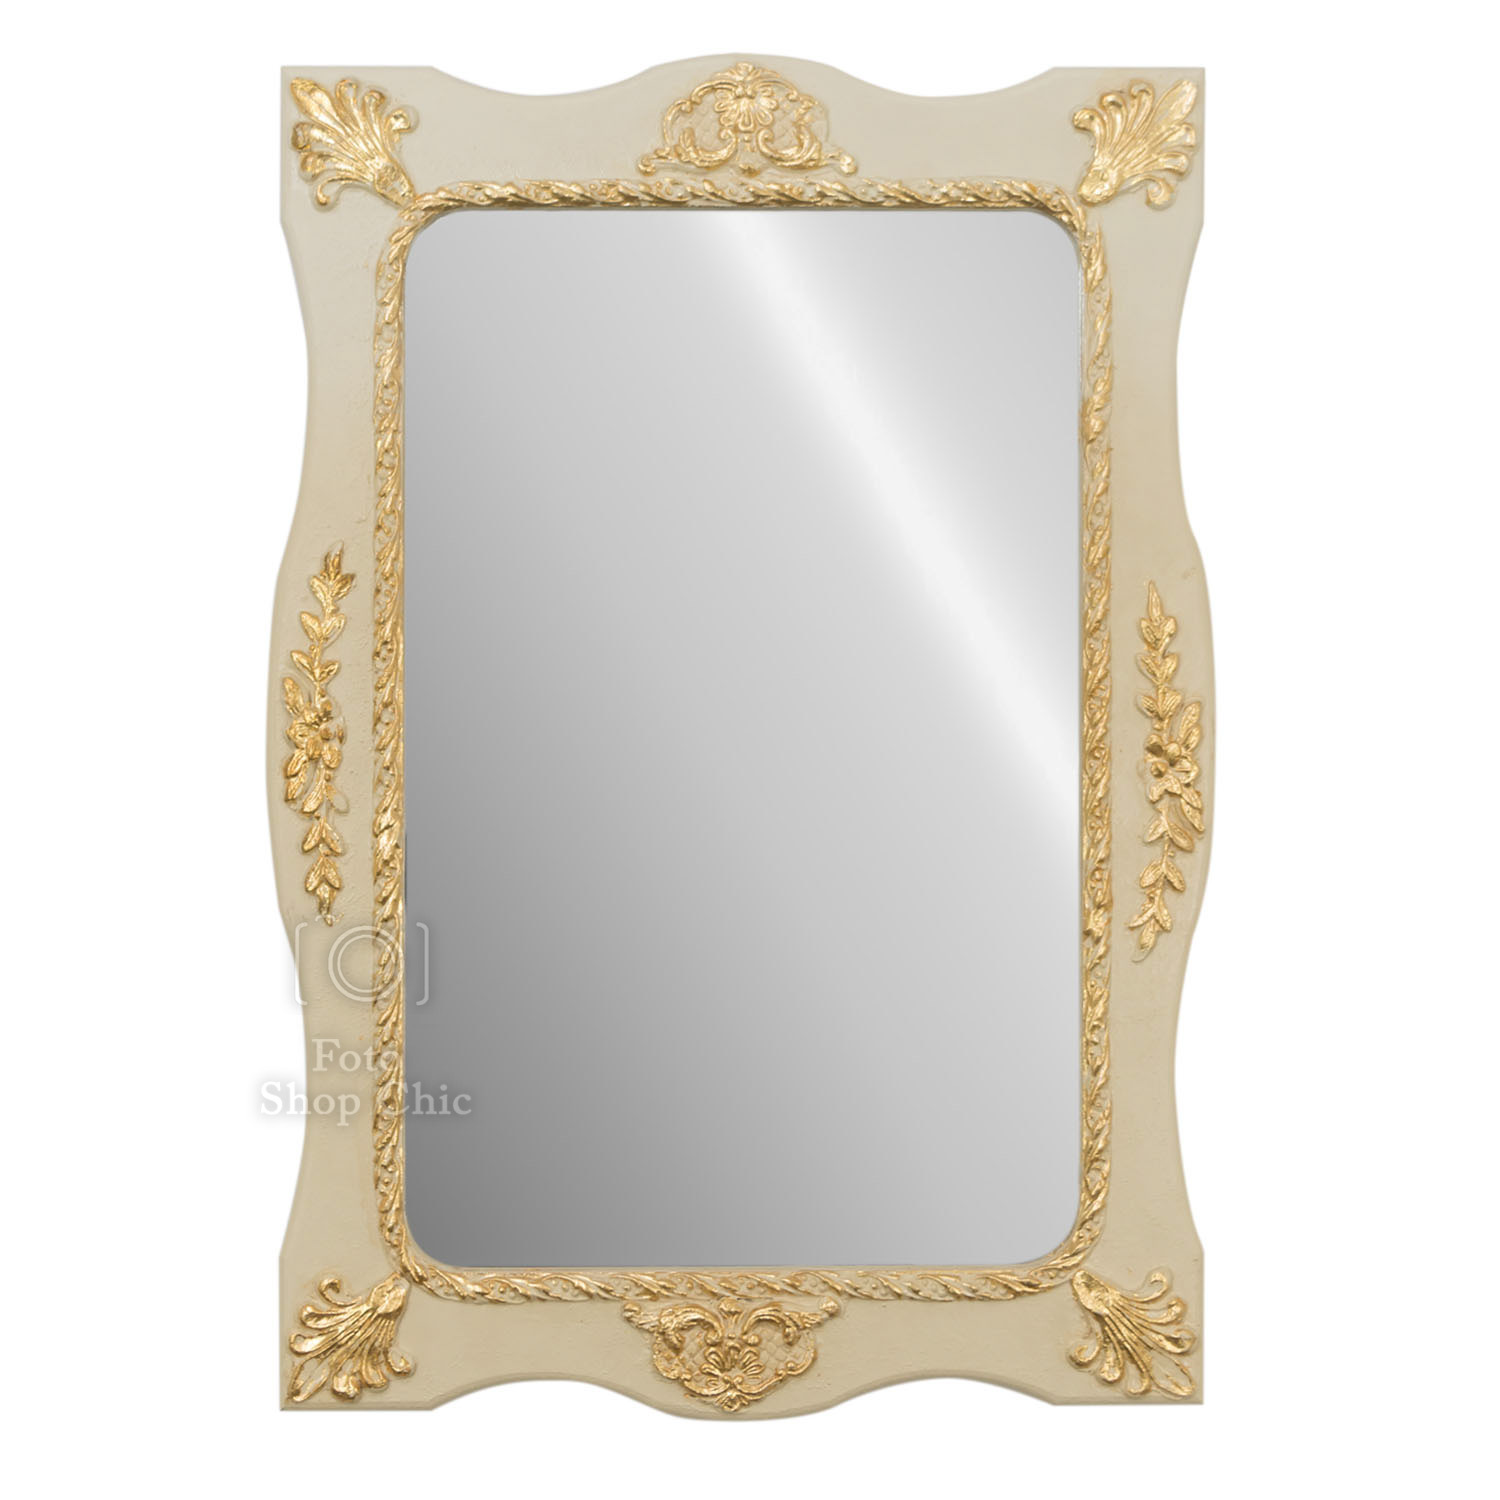 Grande specchio in stile barocco in legno dorato